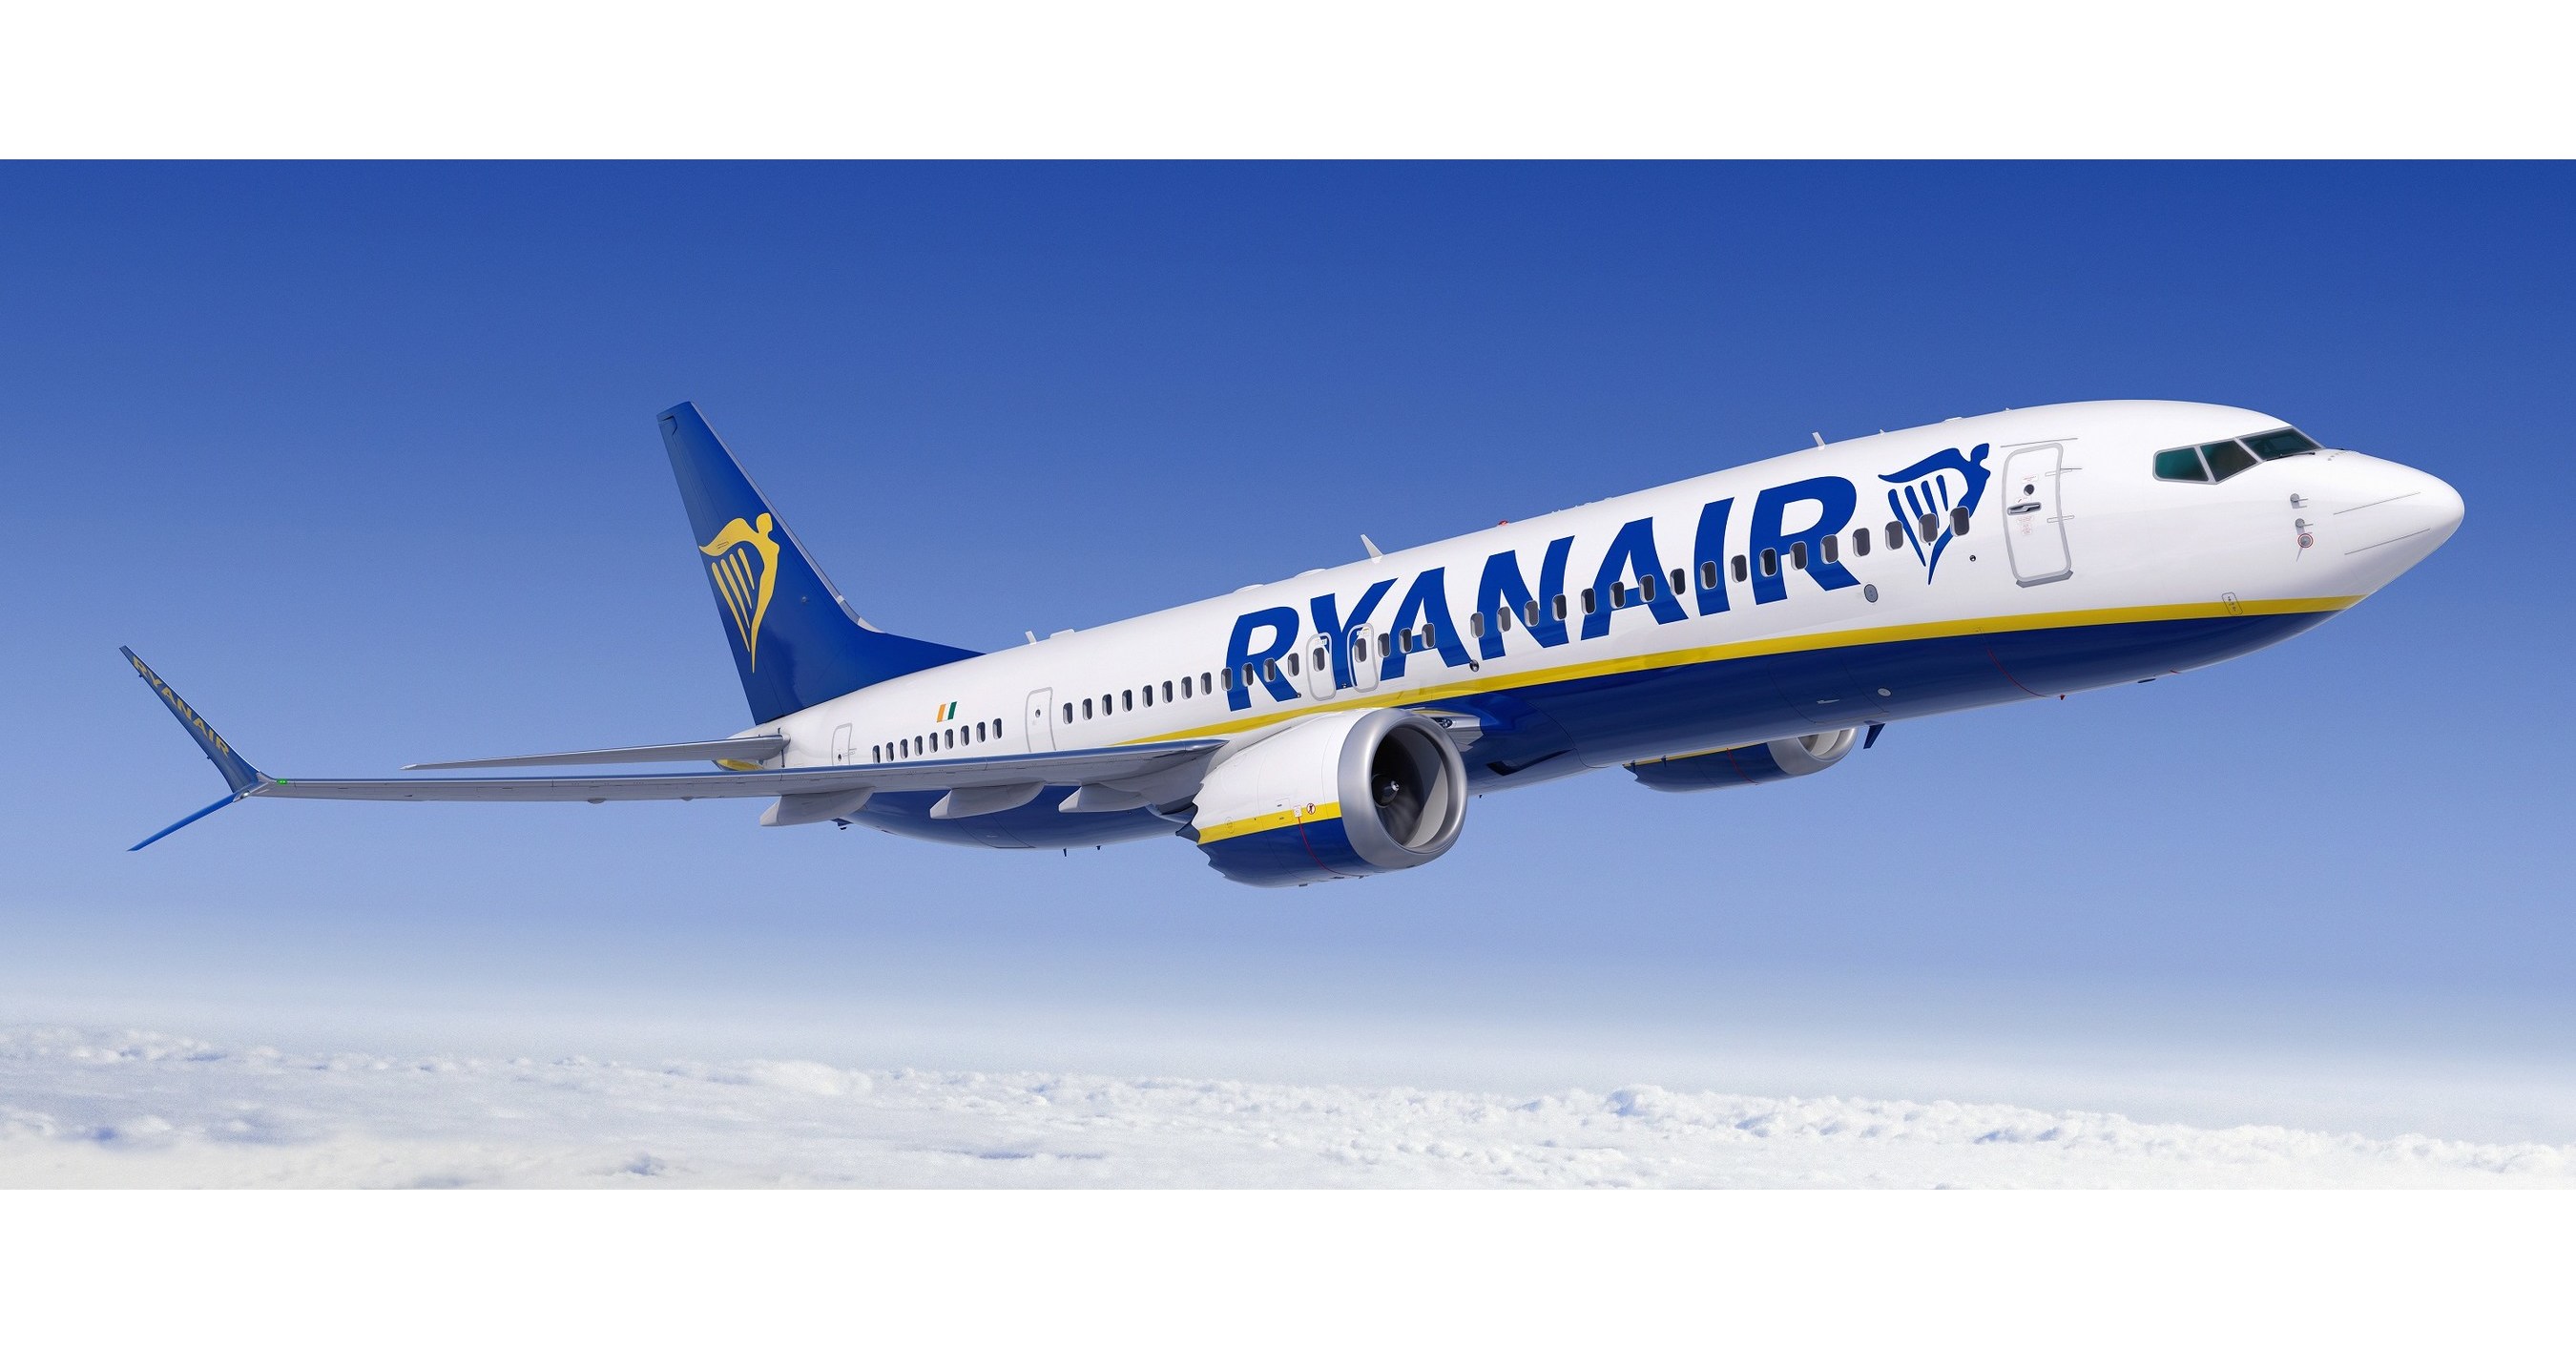 Ryanair Orders 75 More Boeing 737 MAX Jets - Dec 3, 2020